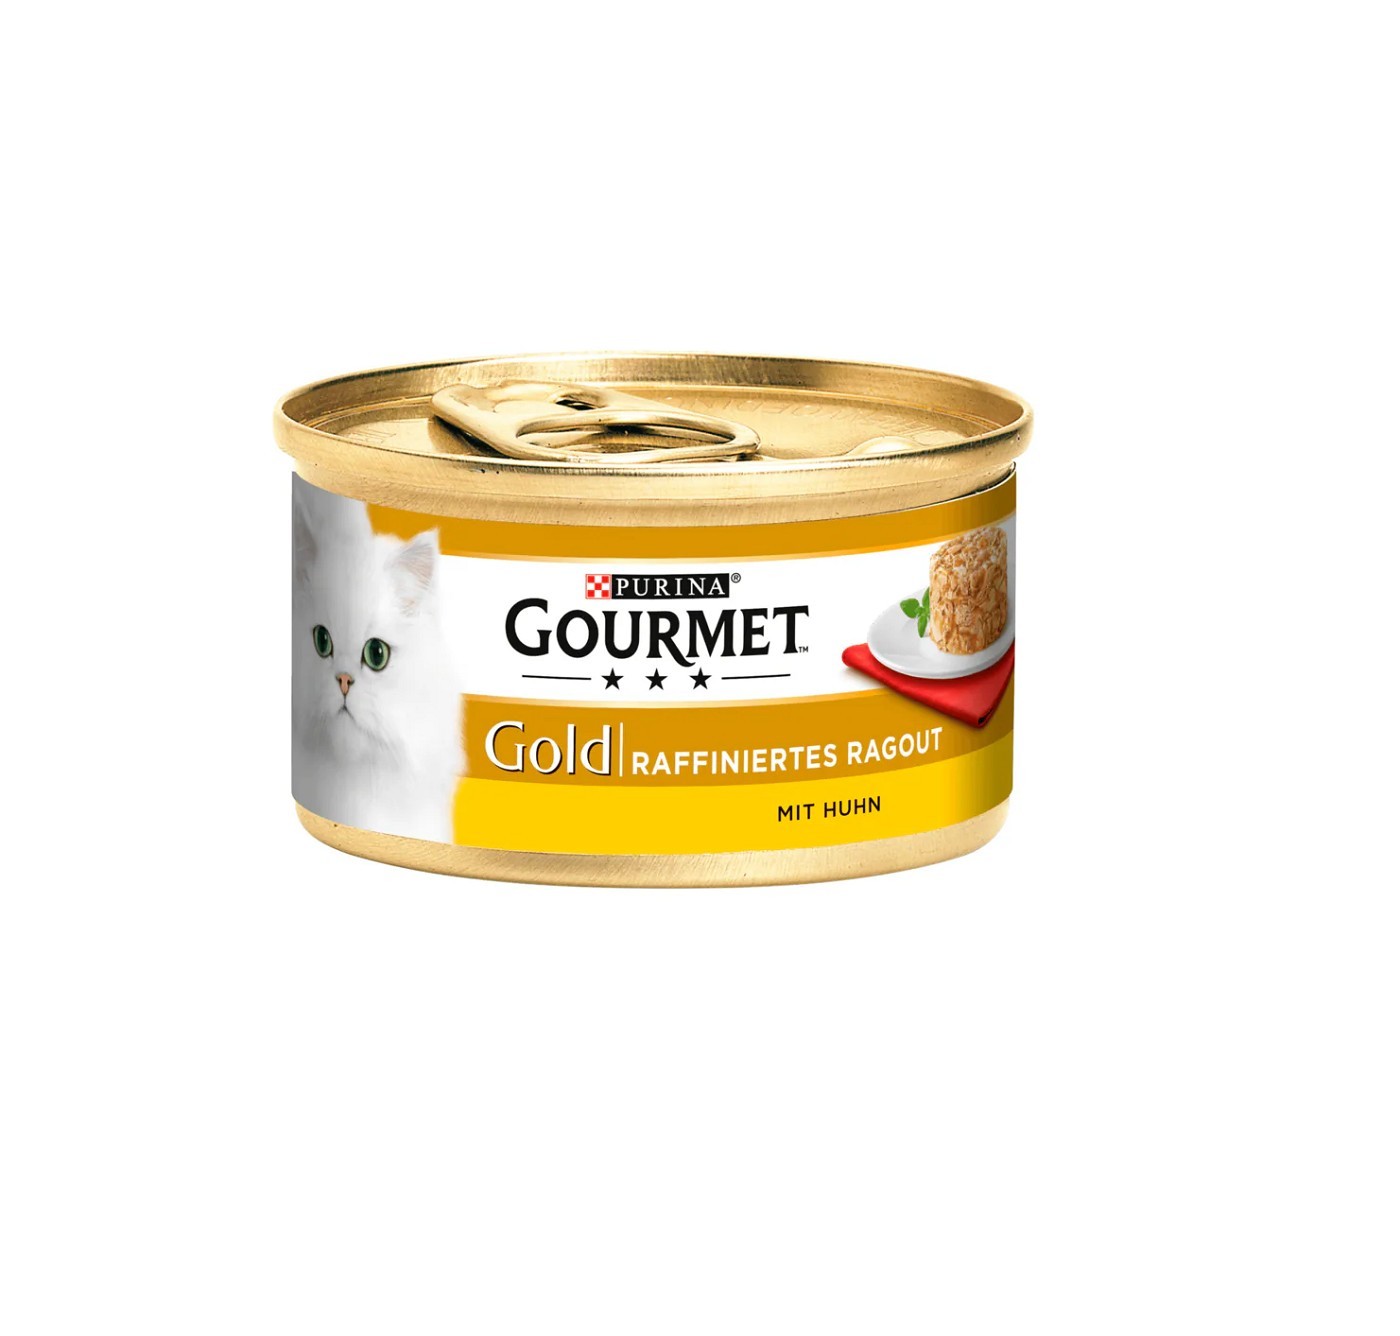 Gourmet Gold Raffiniertes Ragout mit Huhn 12x85g Dose